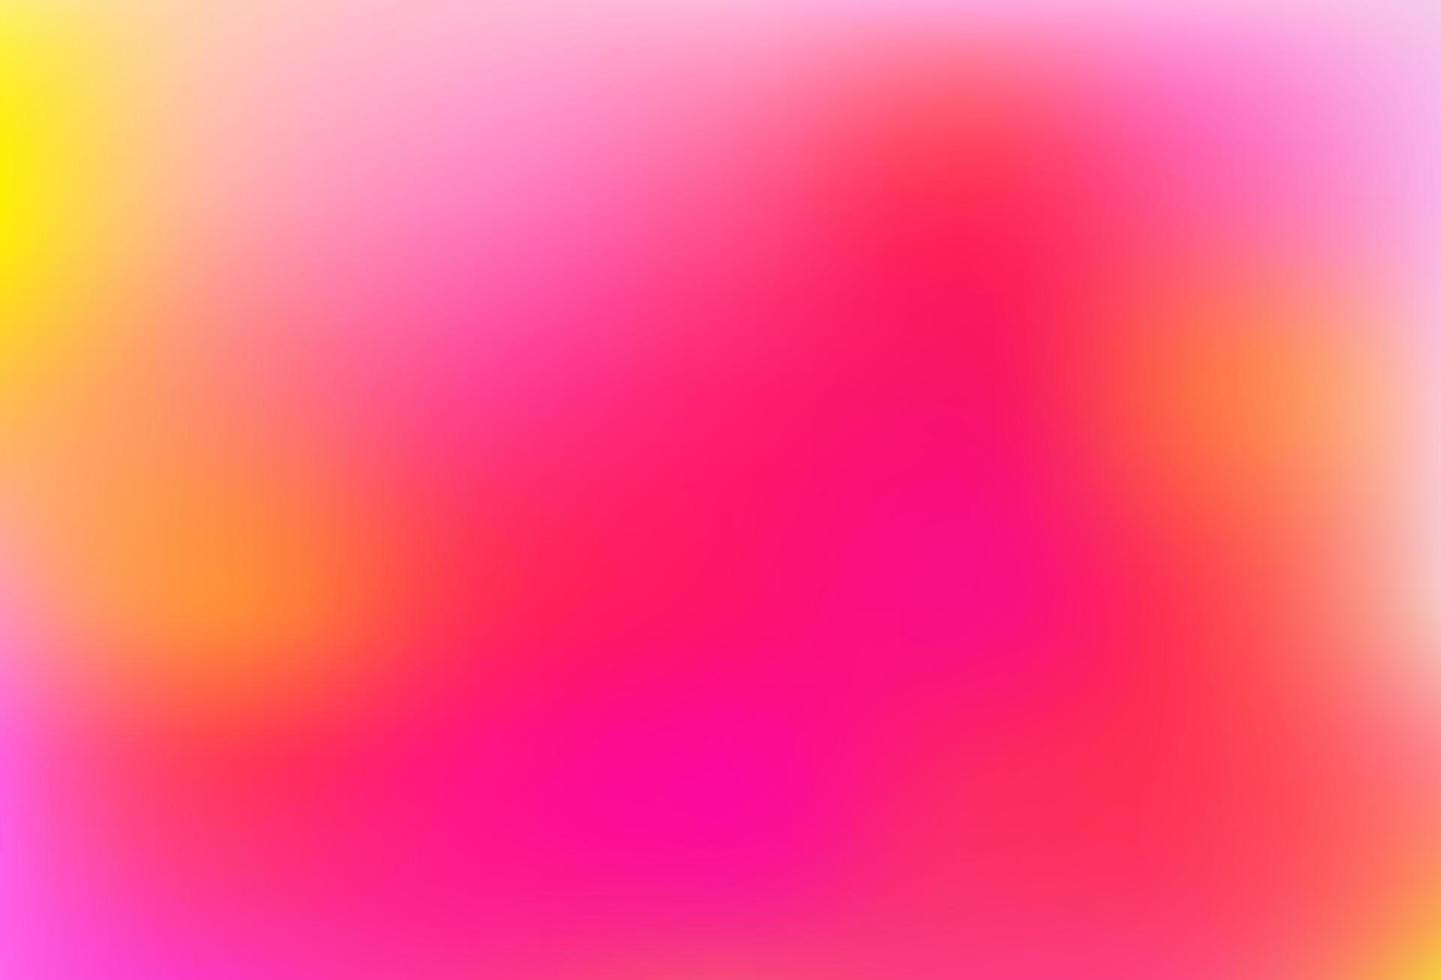 ljus rosa, gul vektor abstrakt ljus bakgrund.